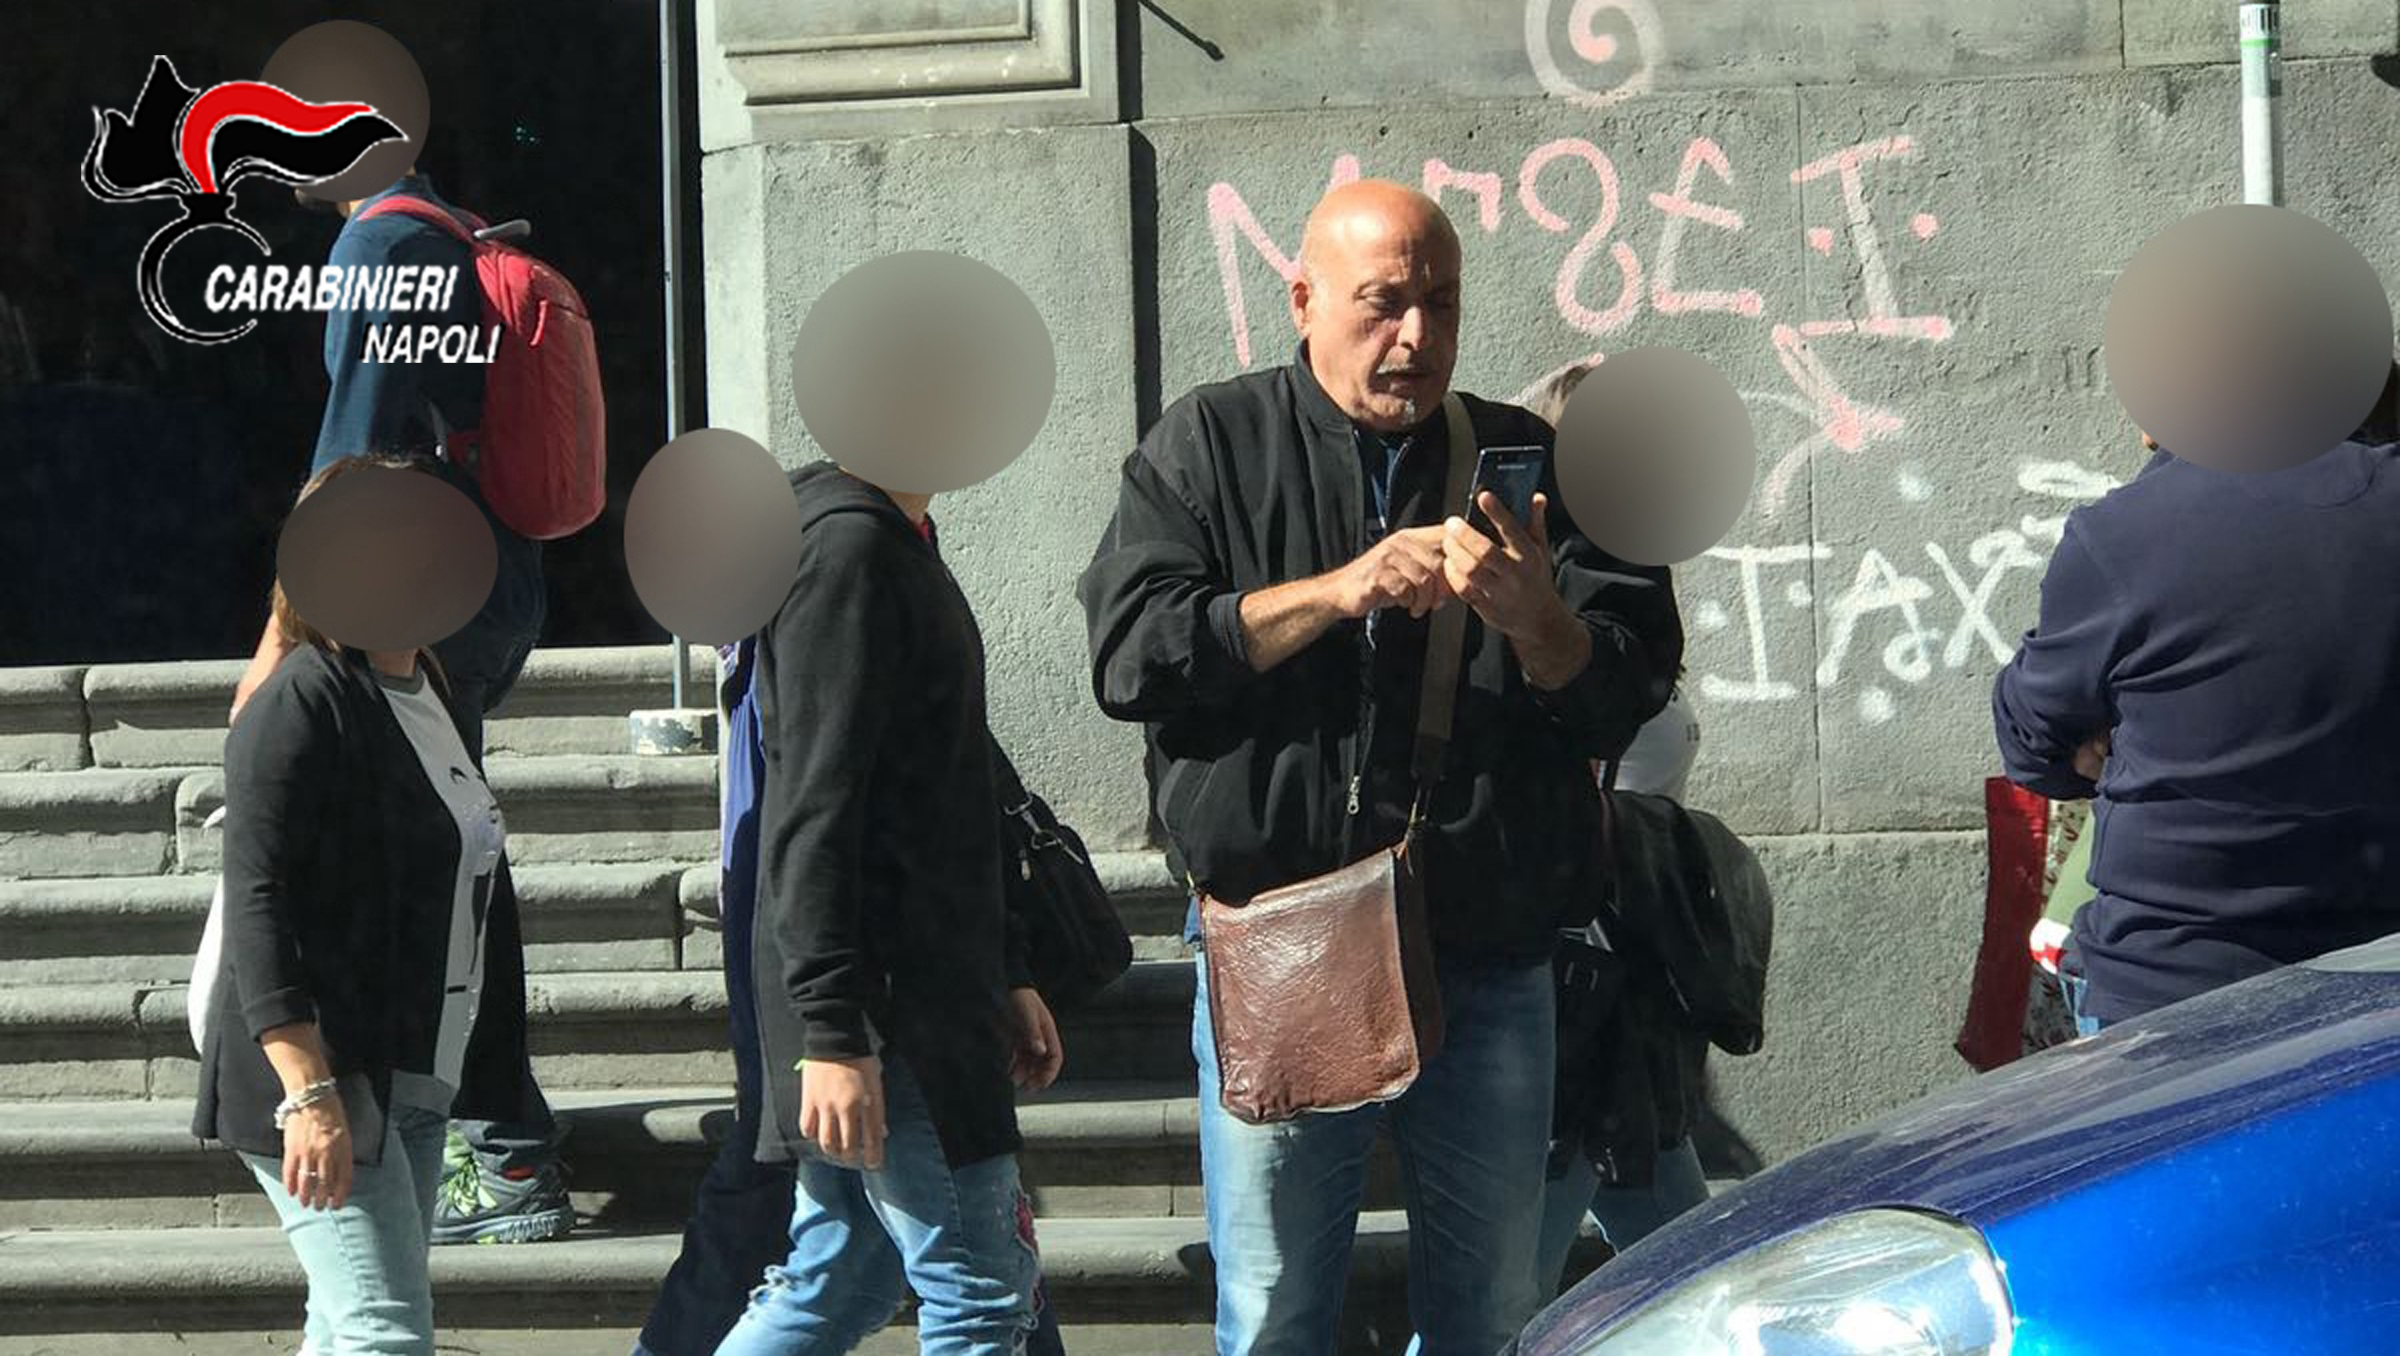  Napoli: turisti non pagano parcheggiatore abusivo che gli riga l’auto: arrestato per estorsione